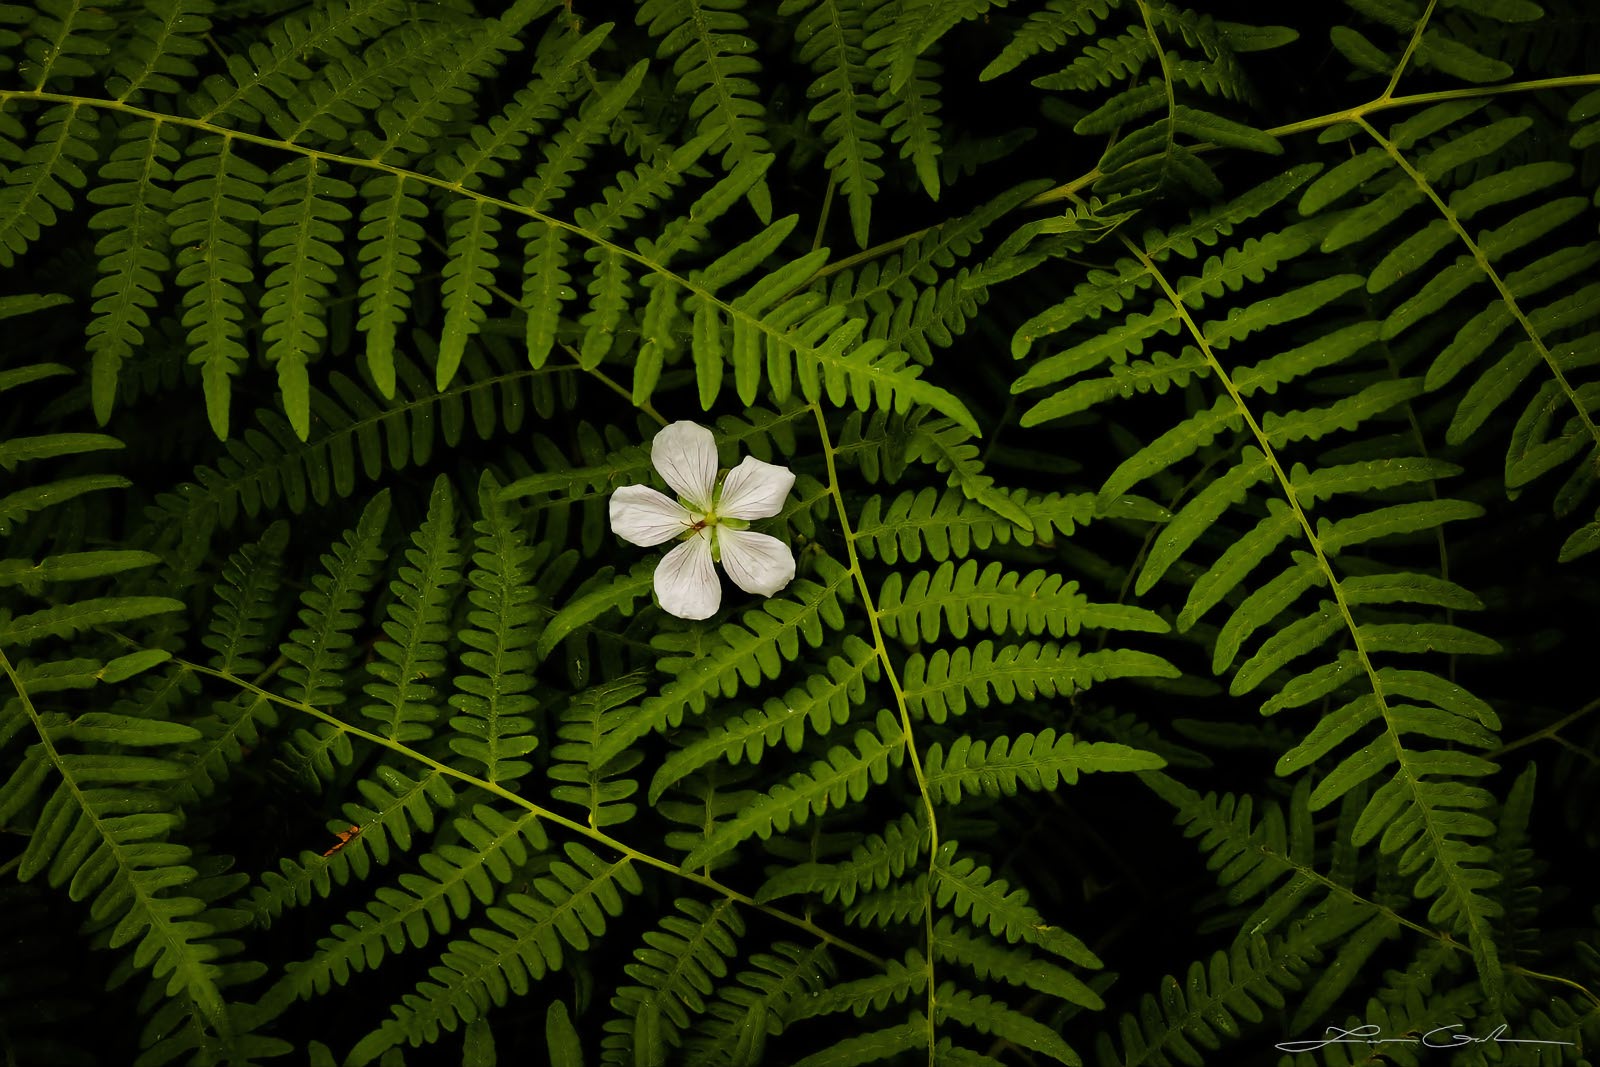 A beautiful white wildflower among green ferns